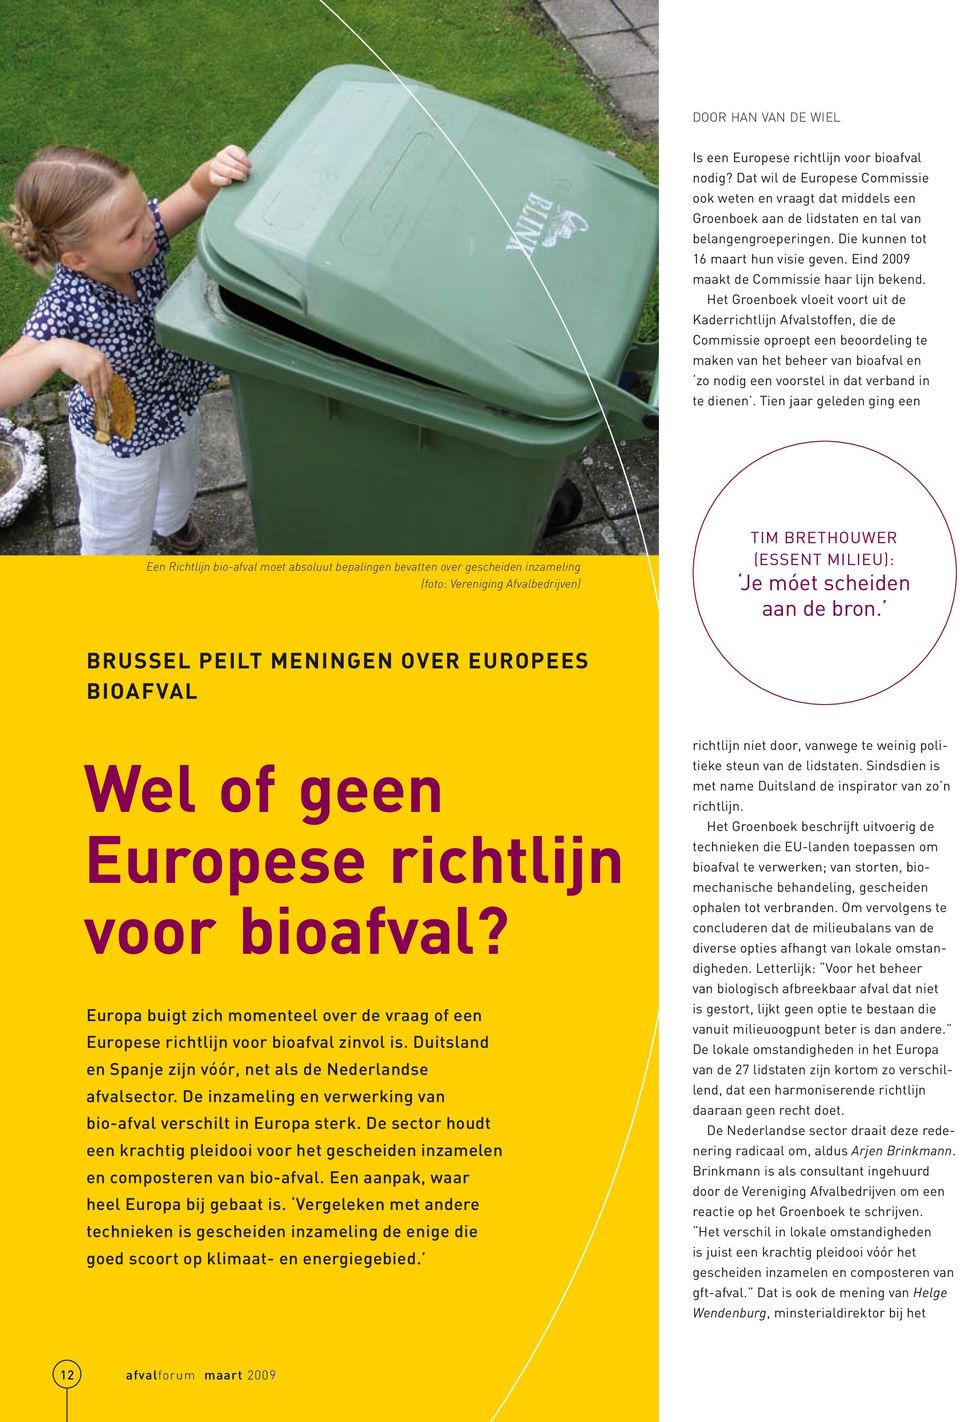 Het Groenboek vloeit voort uit de Kaderrichtlijn Afvalstoffen, die de Commissie oproept een beoordeling te maken van het beheer van bioafval en zo nodig een voorstel in dat verband in te dienen.